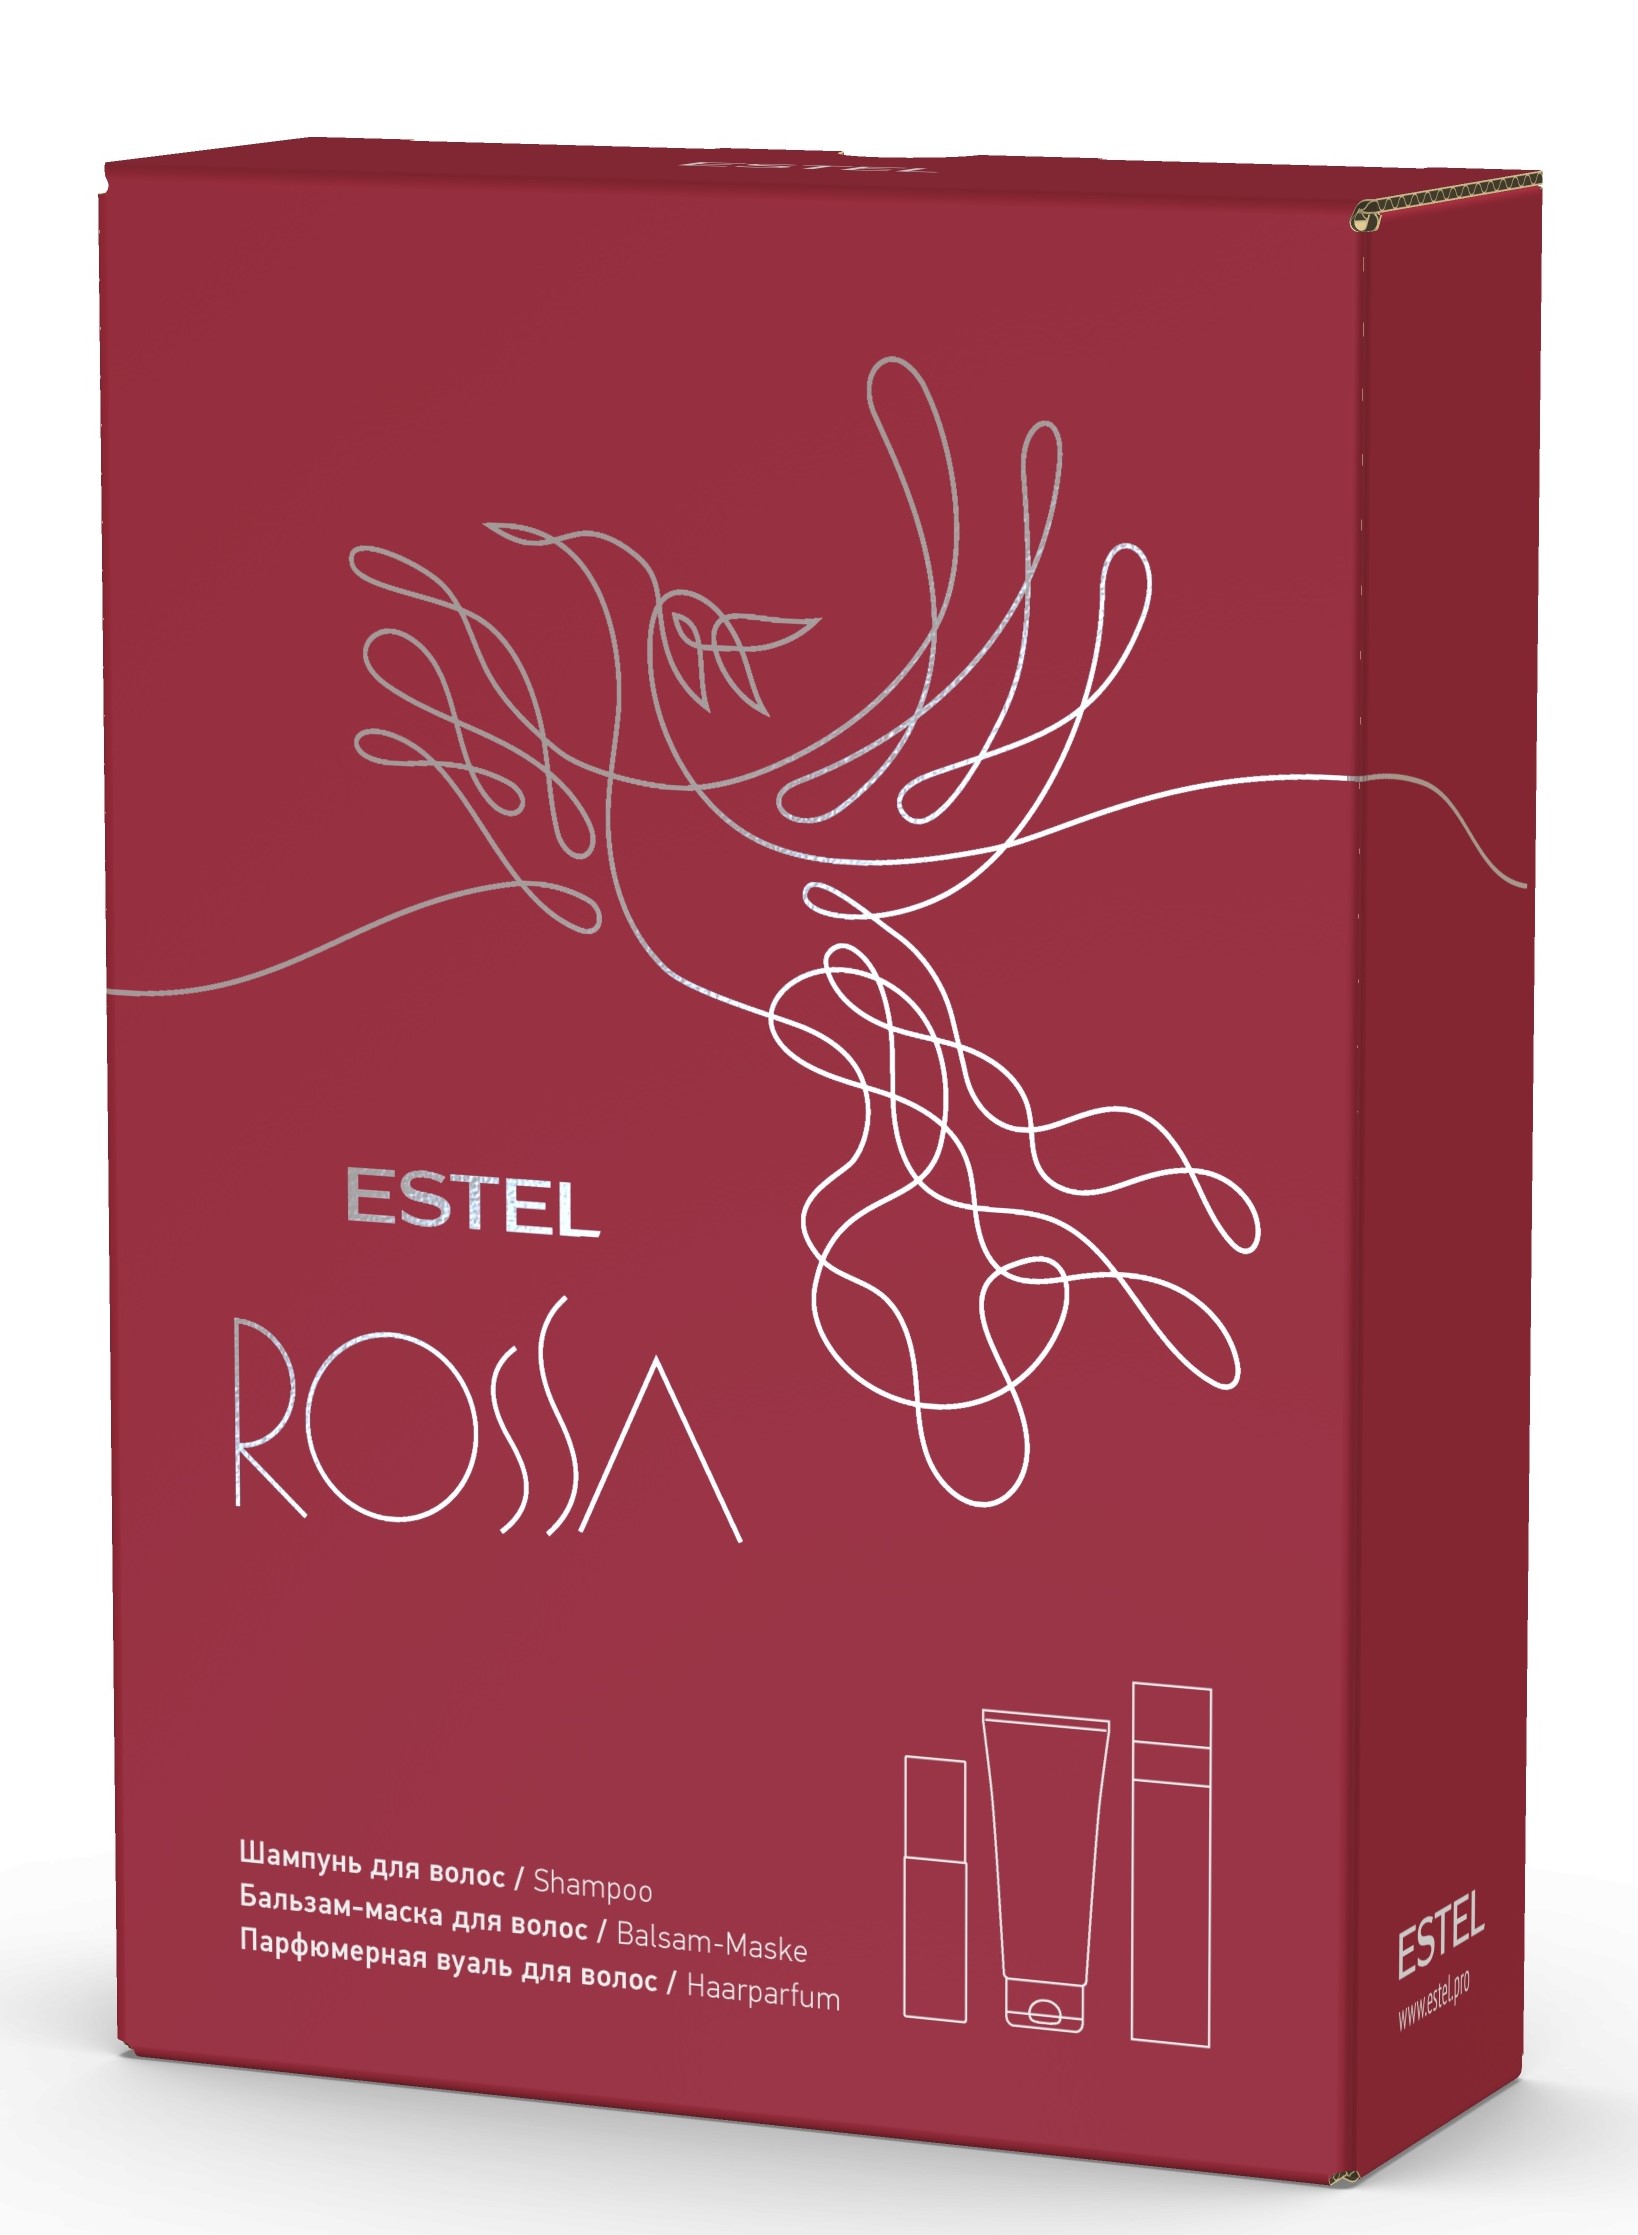 Estel Подарочный набор Rossa: шампунь 250 мл + бальзам-маска 200 мл + парфюмерная вуаль 100 мл (Estel, Rossa) estel крем бальзам curex therapy для сухих поврежденных и ослабленных волос 250 мл